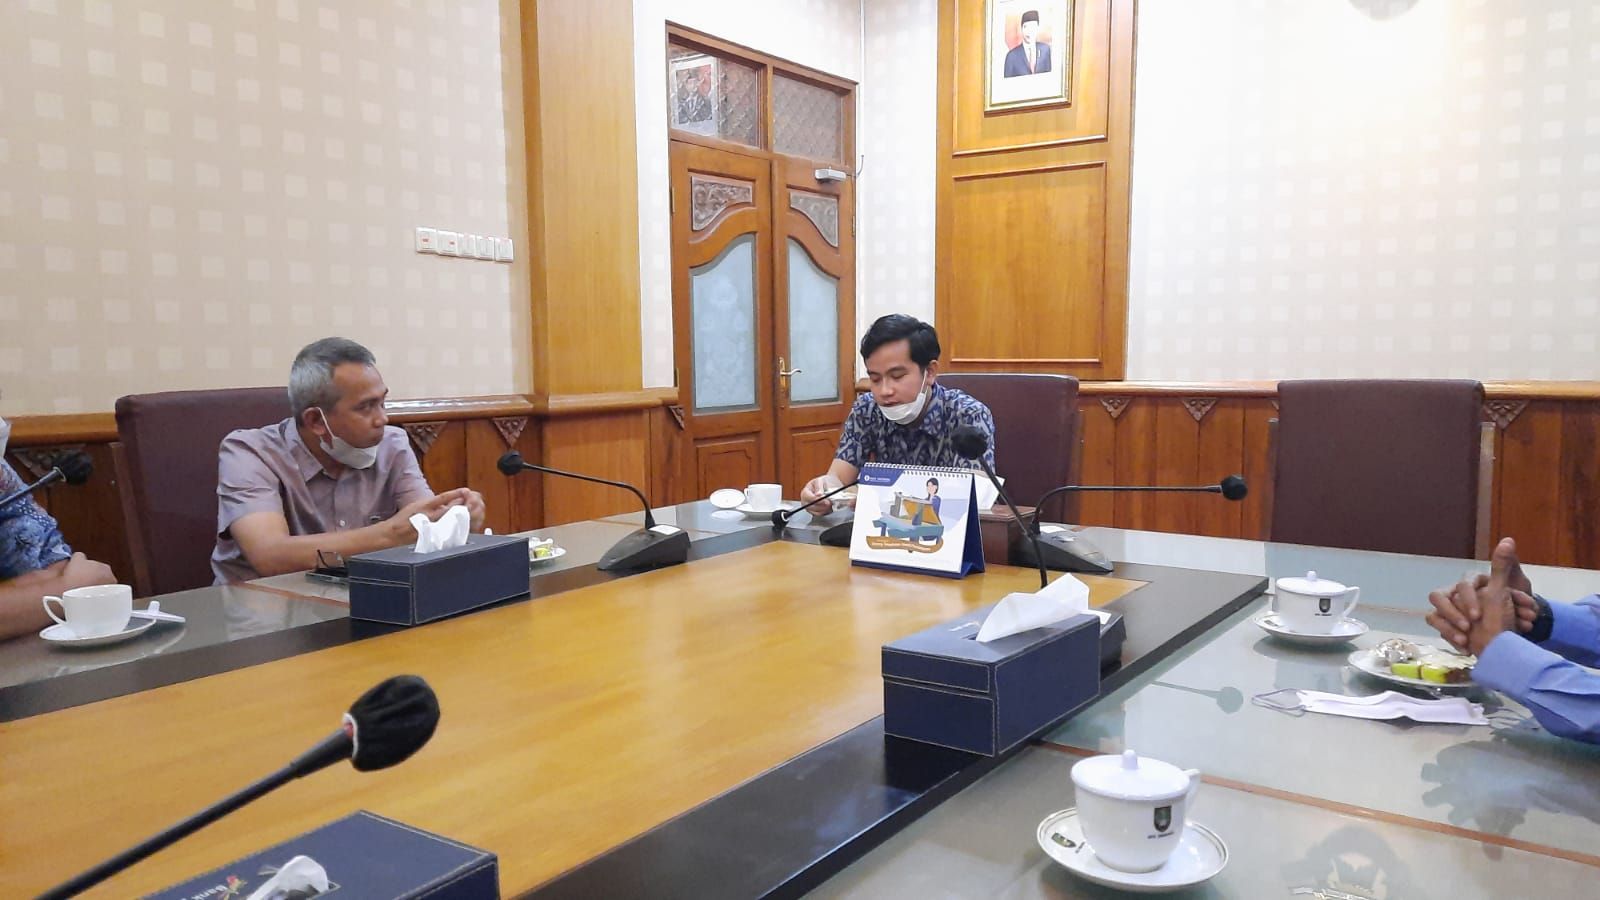 Walikota Solo, Gibran Rakabuming Raka menerima kunjungan tim yang dipimpin CEO PRMN/Promedia Agus Sulistriyono membicarakan ekonomi kolaboratif untuk pemulihan pascapandemi, Senin 14 Februari 2022.